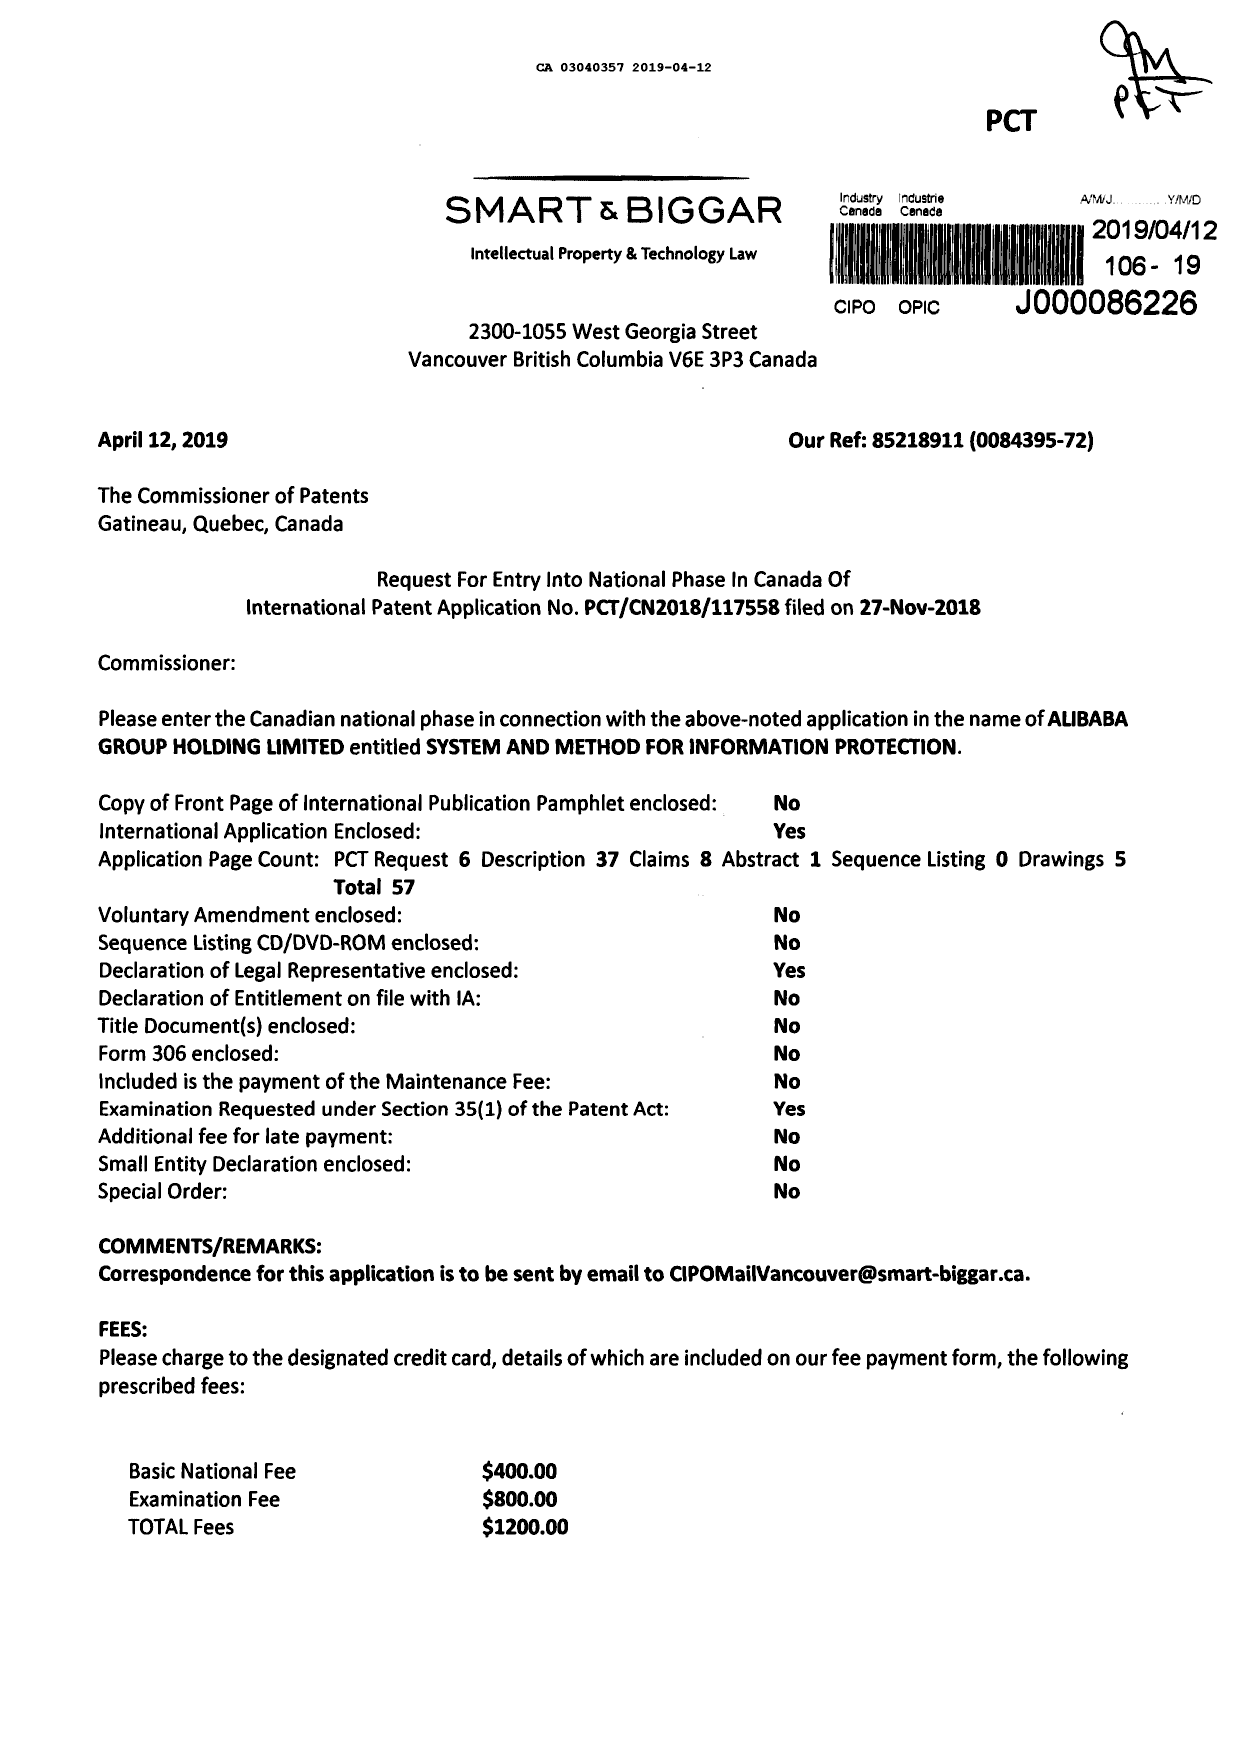 Document de brevet canadien 3040357. Demande d'entrée en phase nationale 20190412. Image 1 de 3